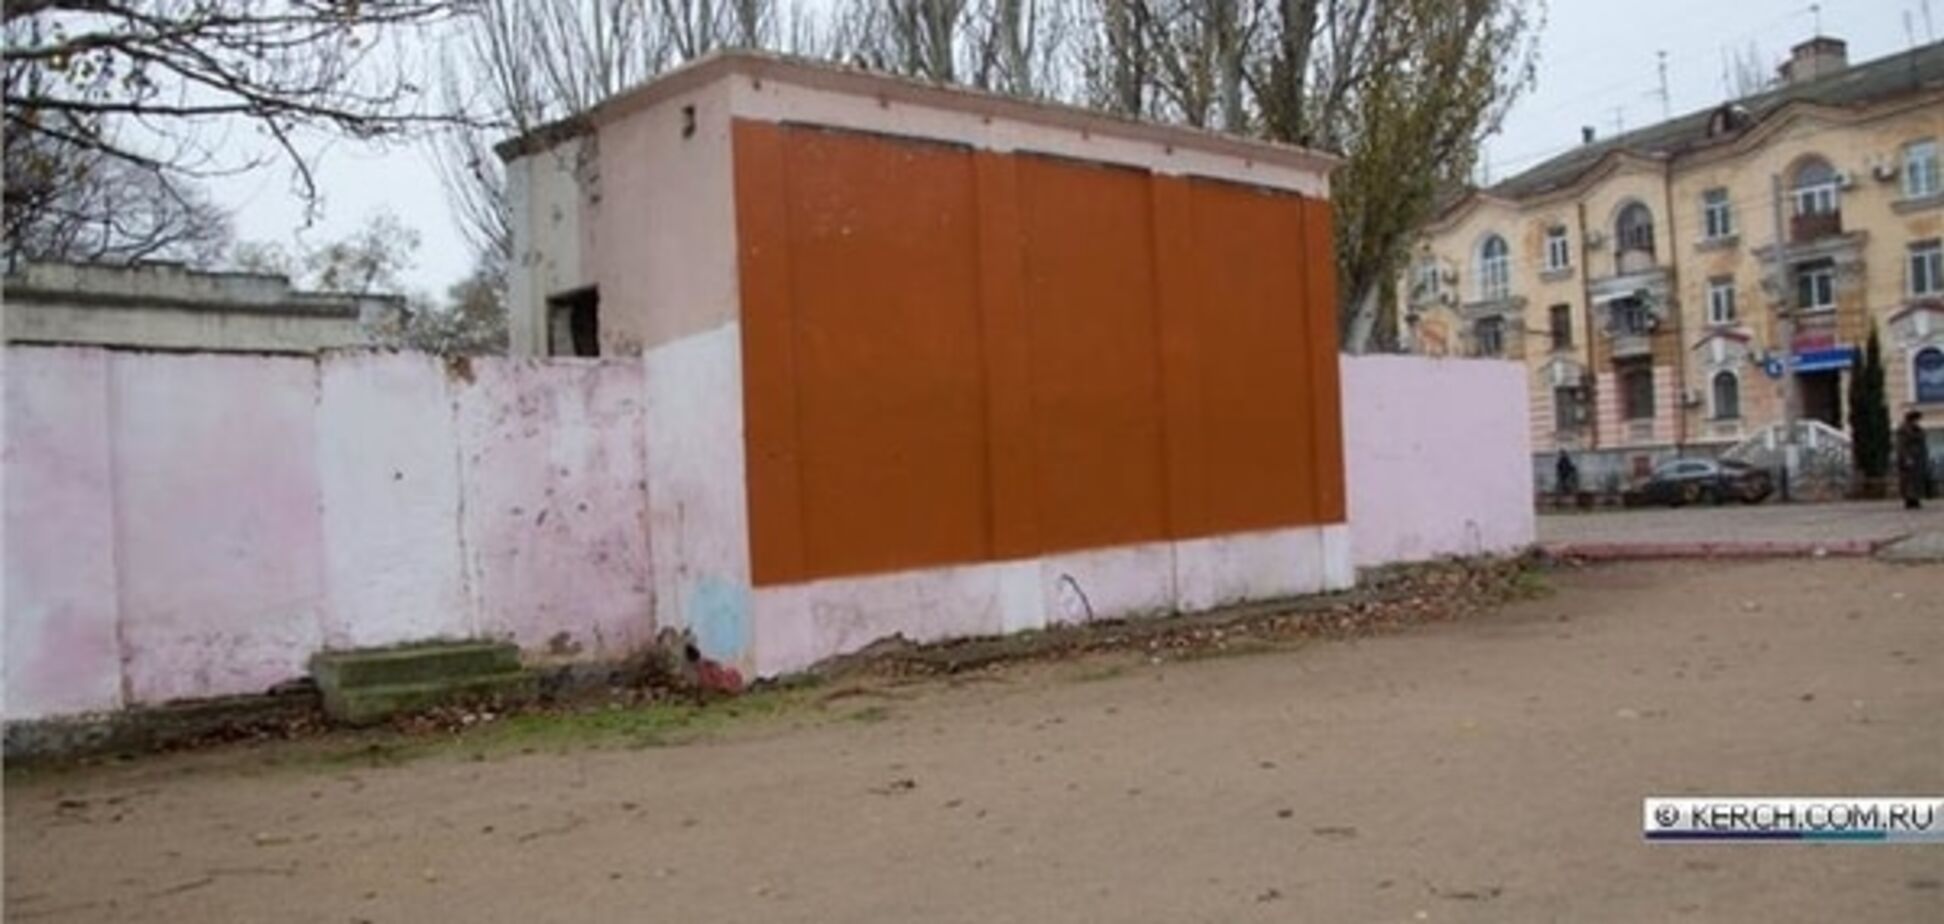 Давно б так: в Керчі останнього Путіна перетворили на 'помаранчевий' квадрат. Фотофакт